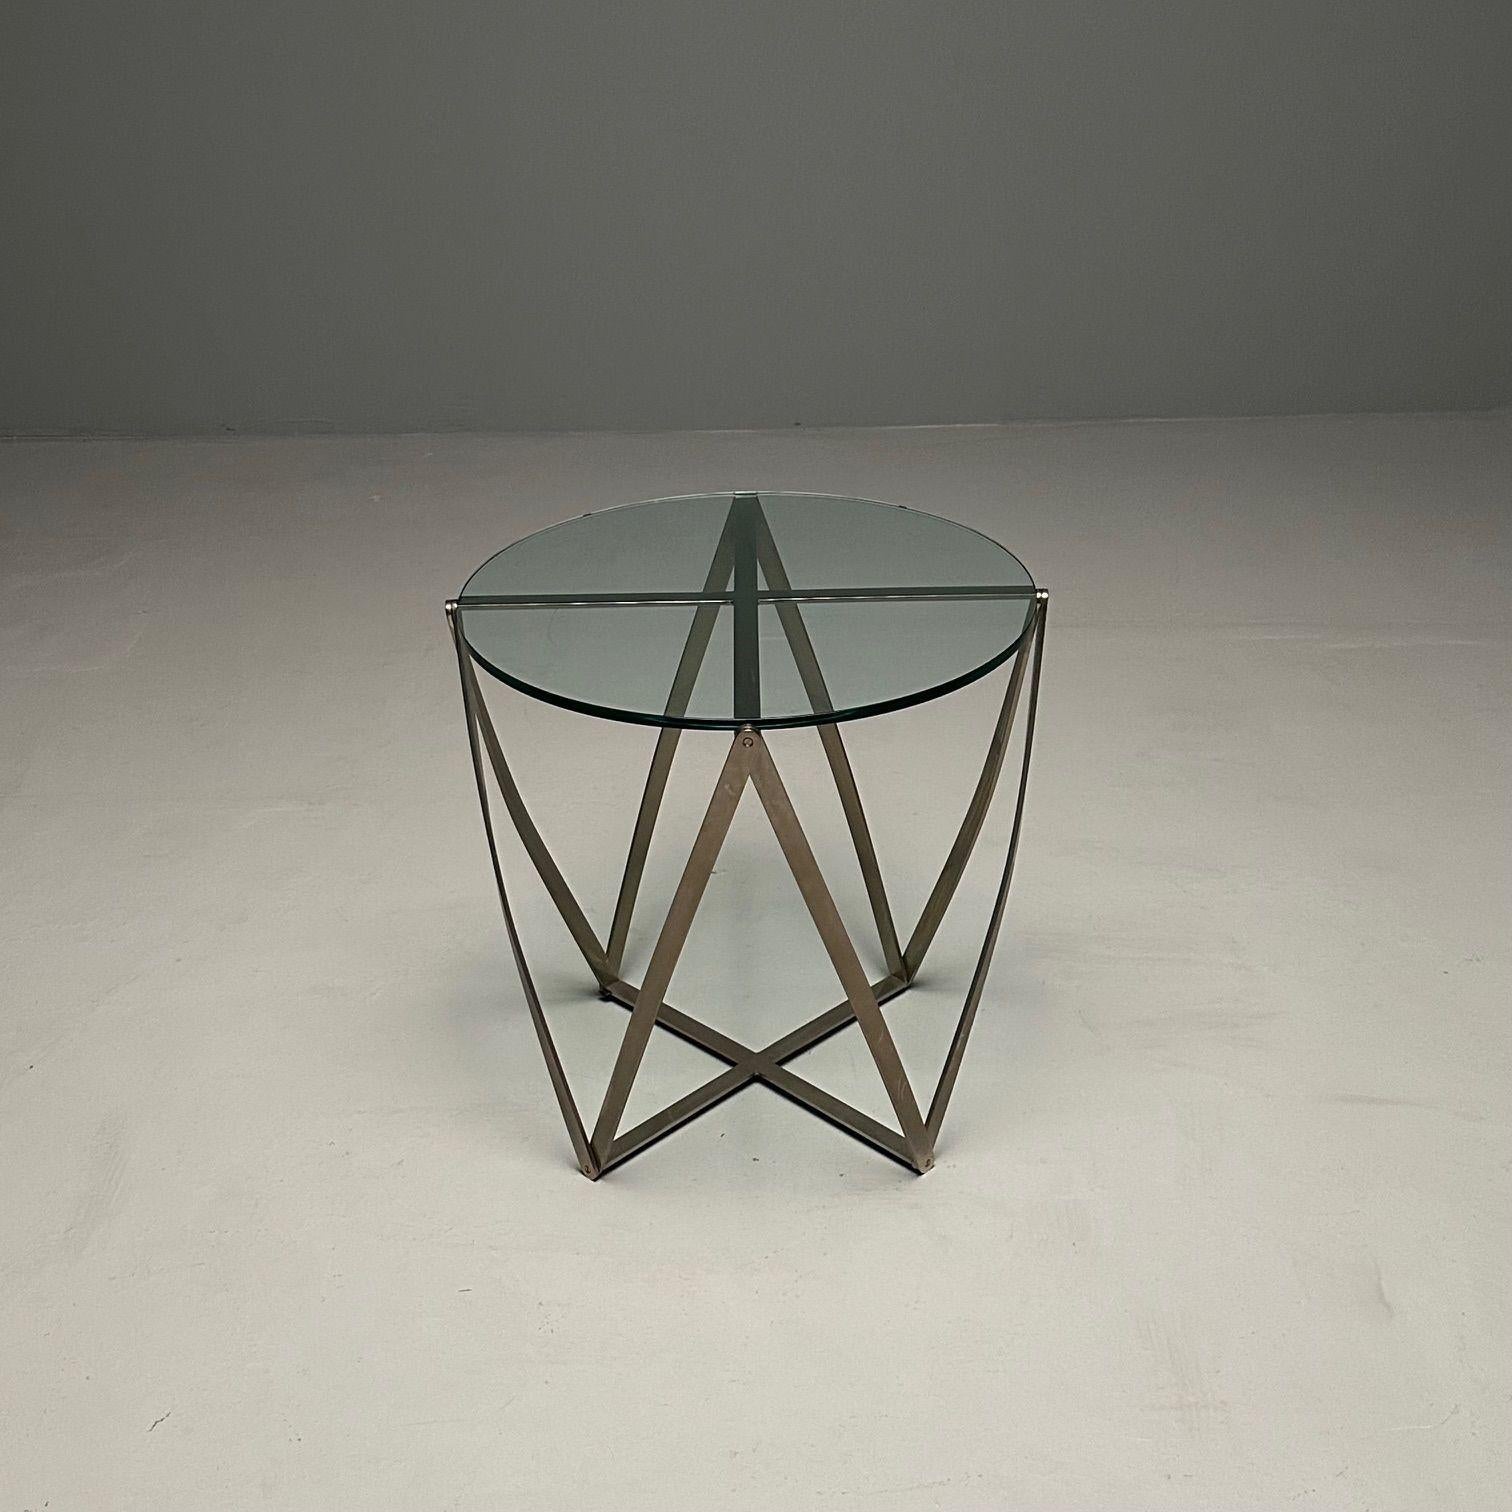 Table d'appoint circulaire en aluminium mi-siècle moderne de John Vesey, Sculptural
 
La table 